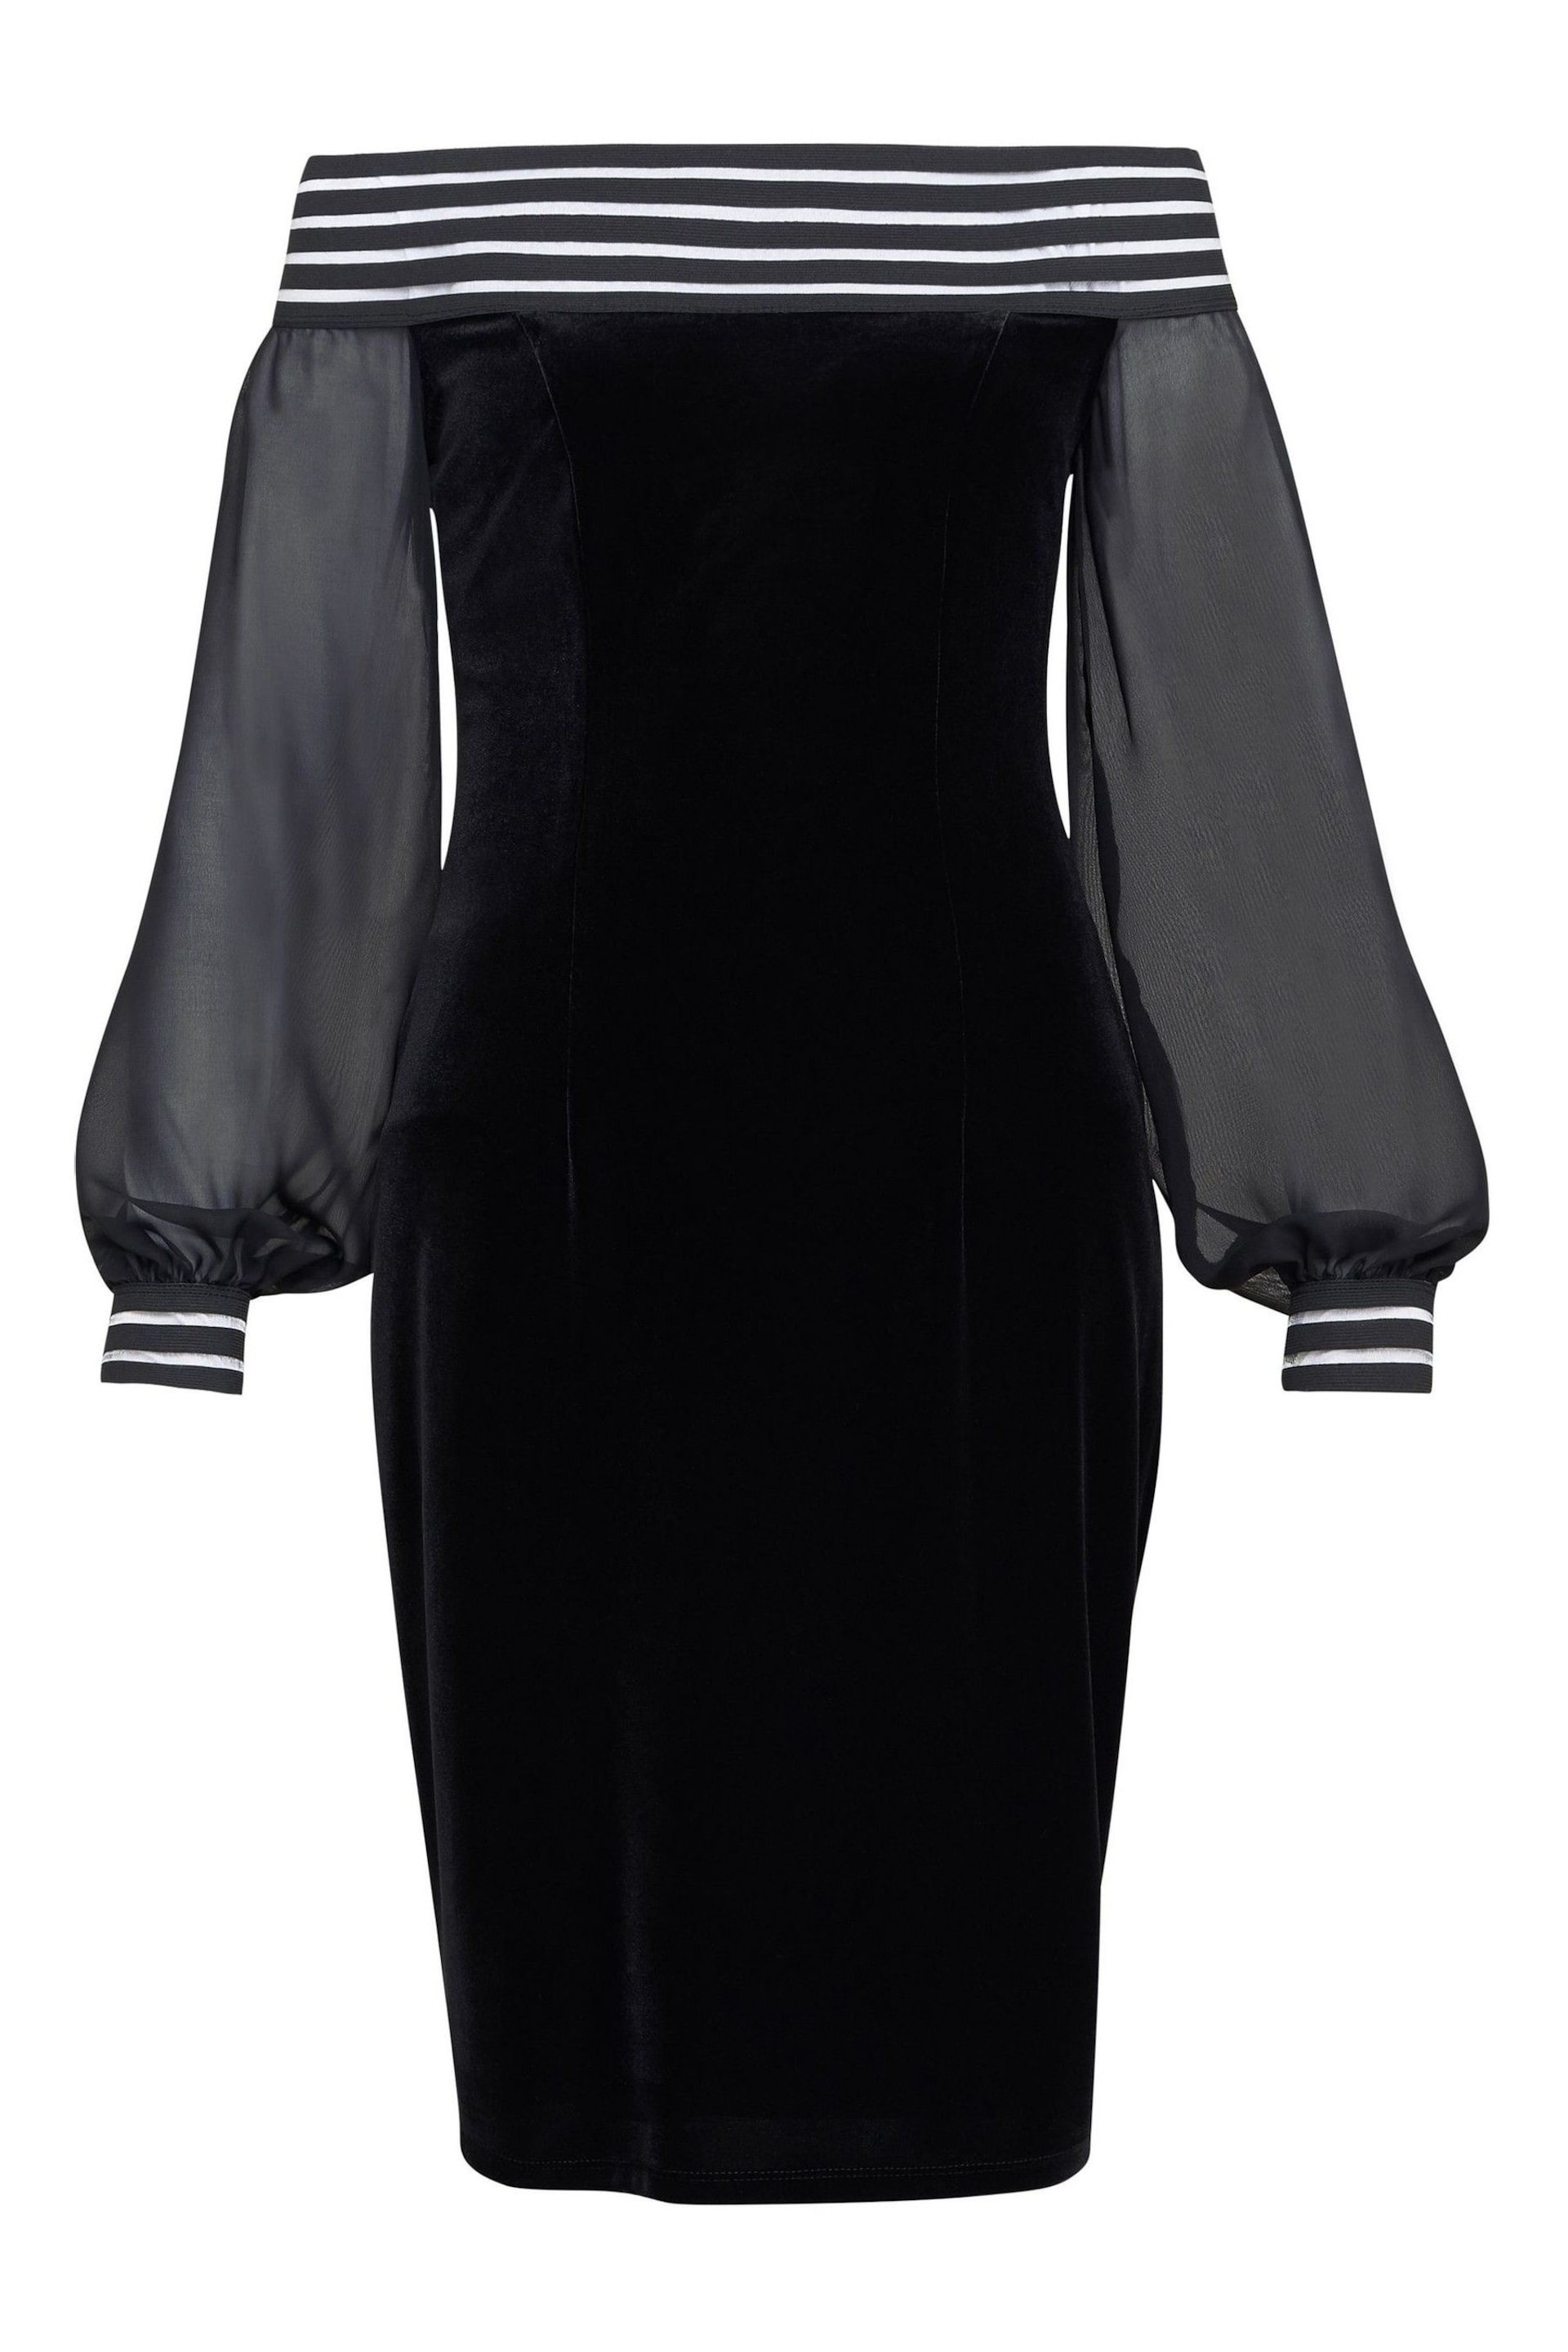 Gina Bacconi Taylor Velvet Off The Shoulder Black Dress - Image 5 of 5